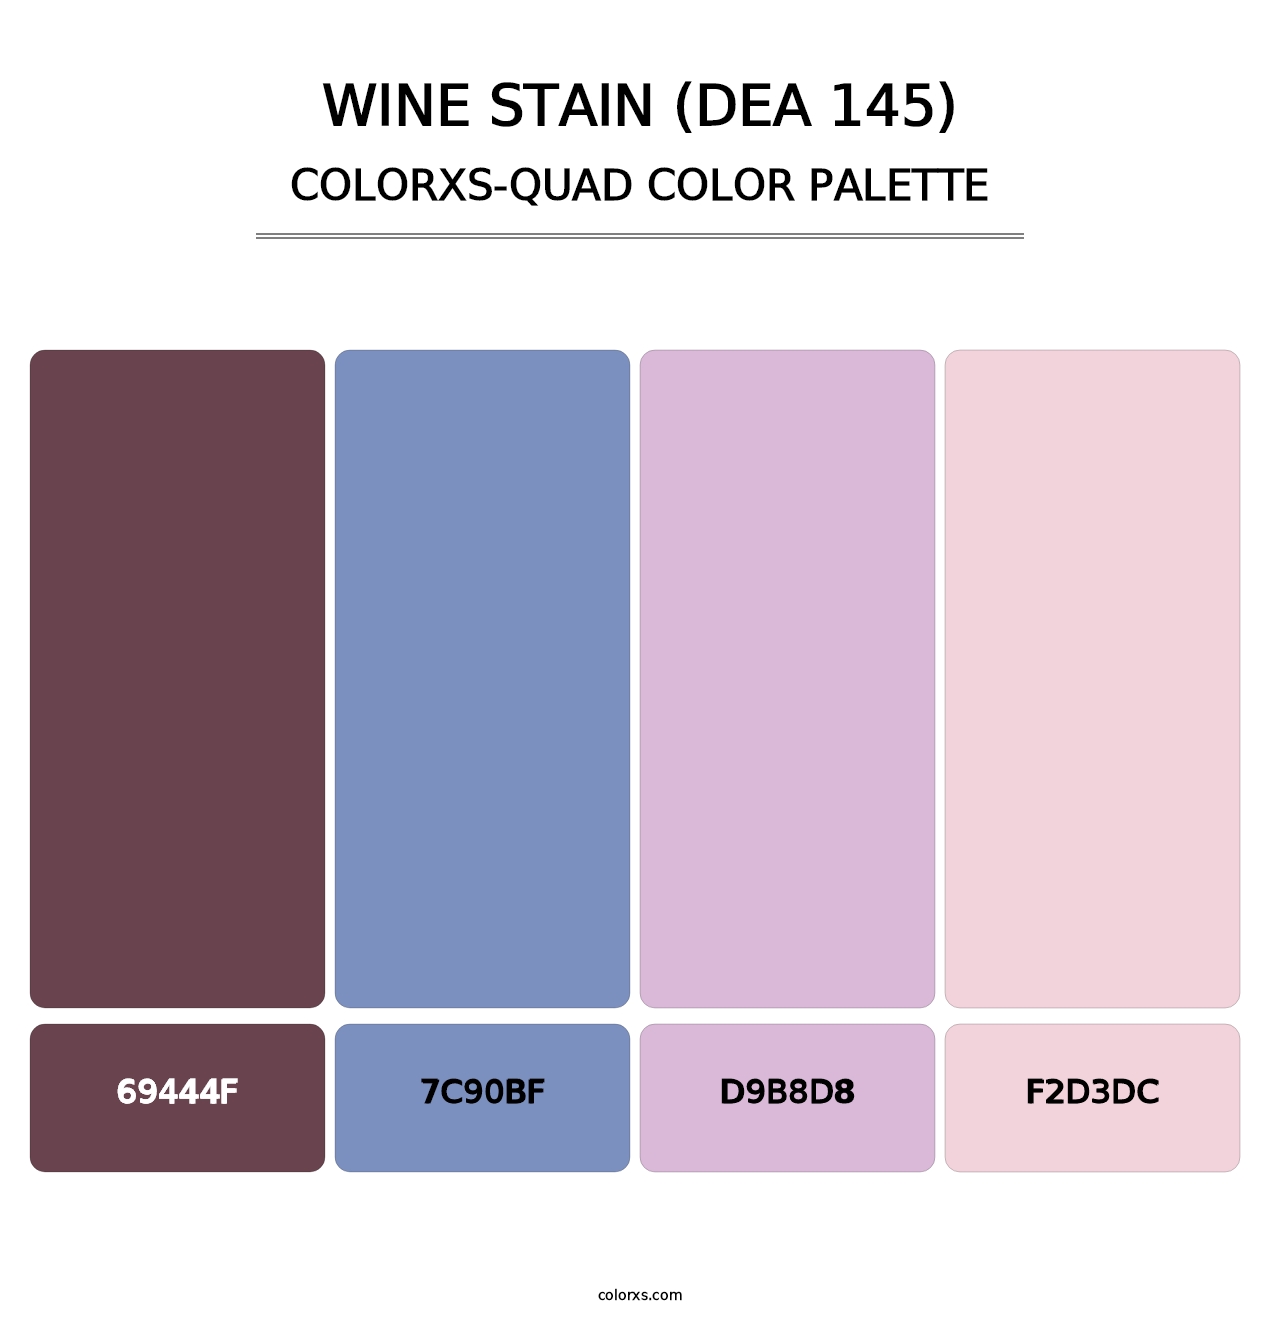 Wine Stain (DEA 145) - Colorxs Quad Palette